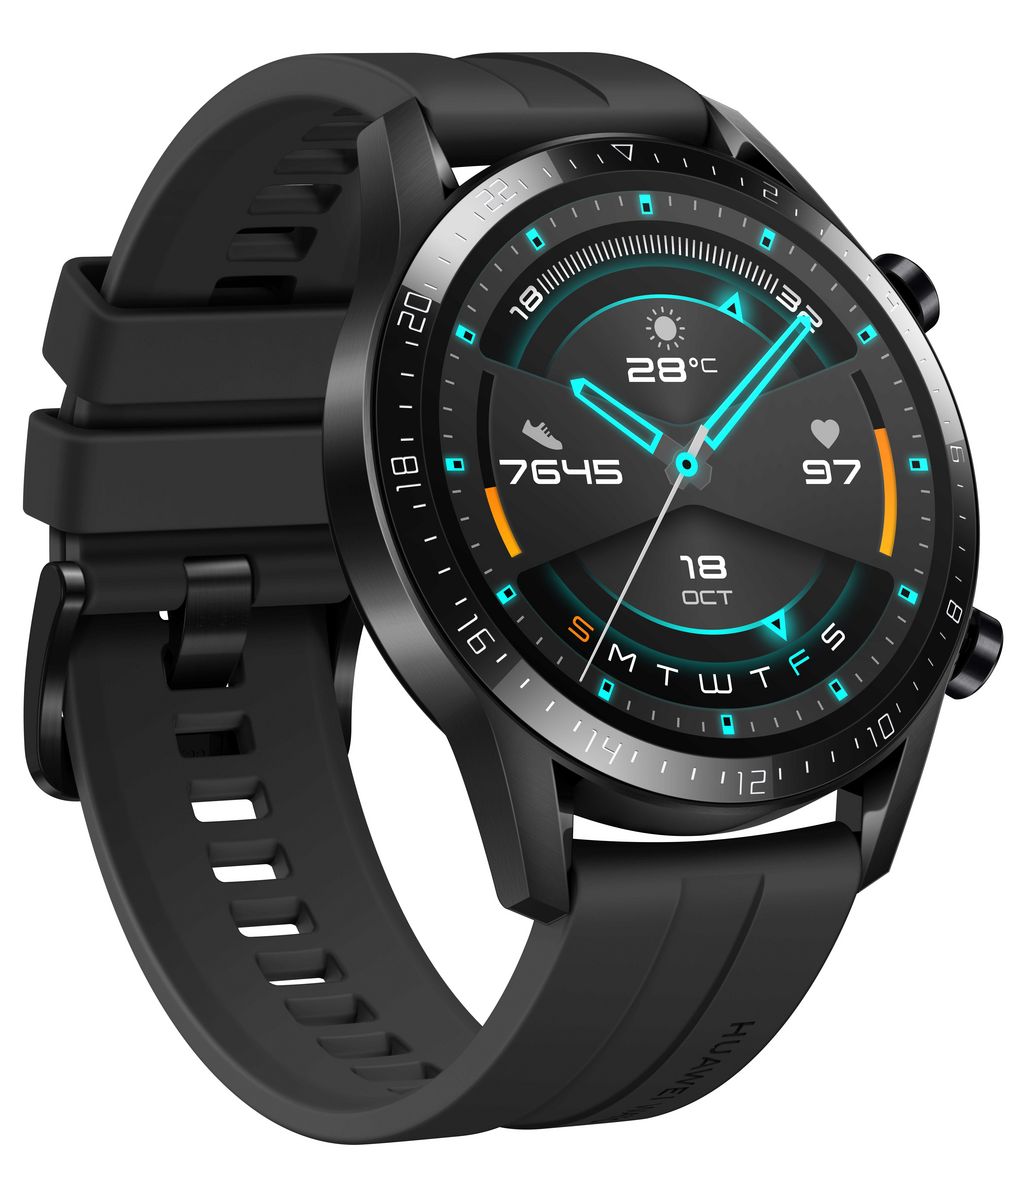 Die Huawei Watch GT 2